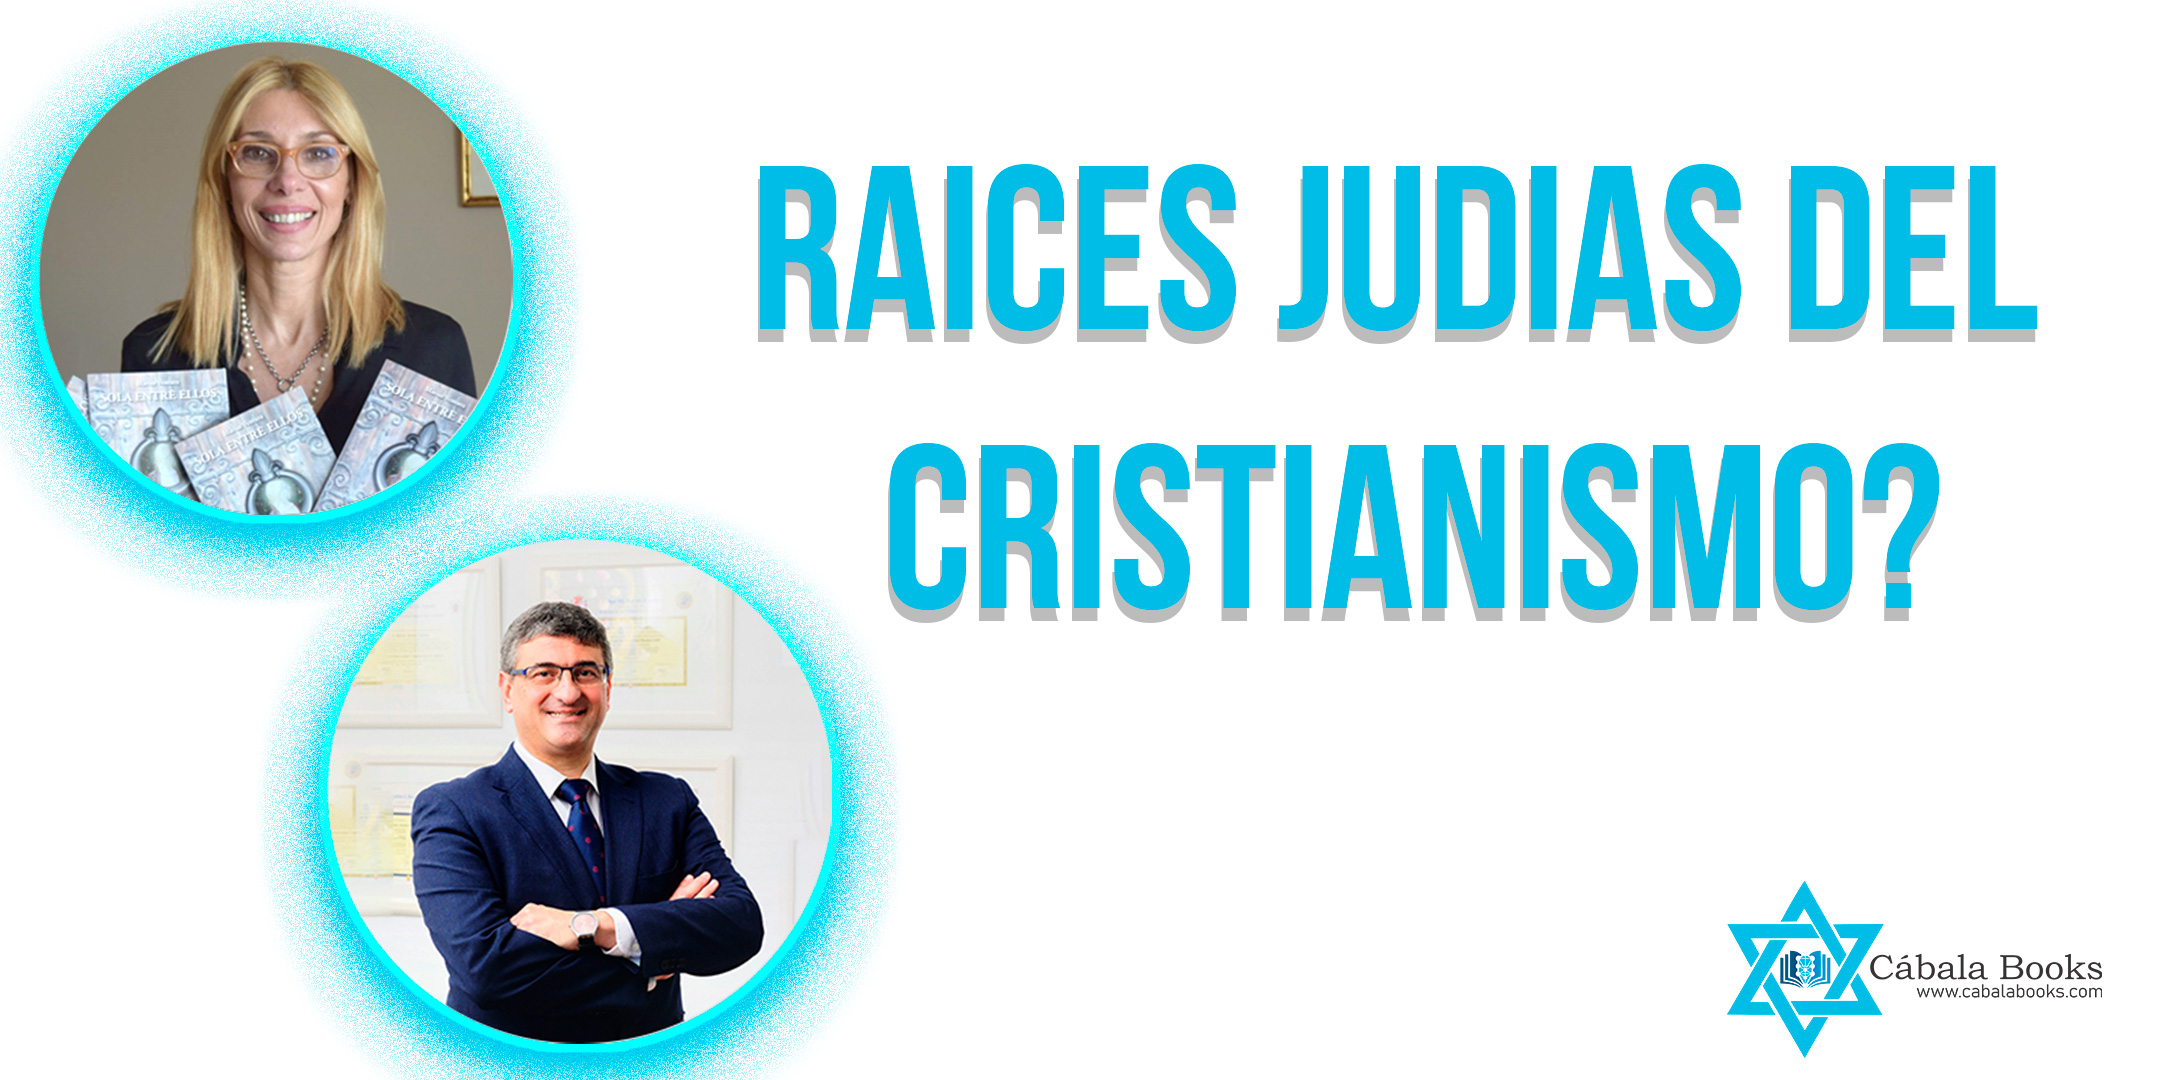 raices-judias-del-cristianismo